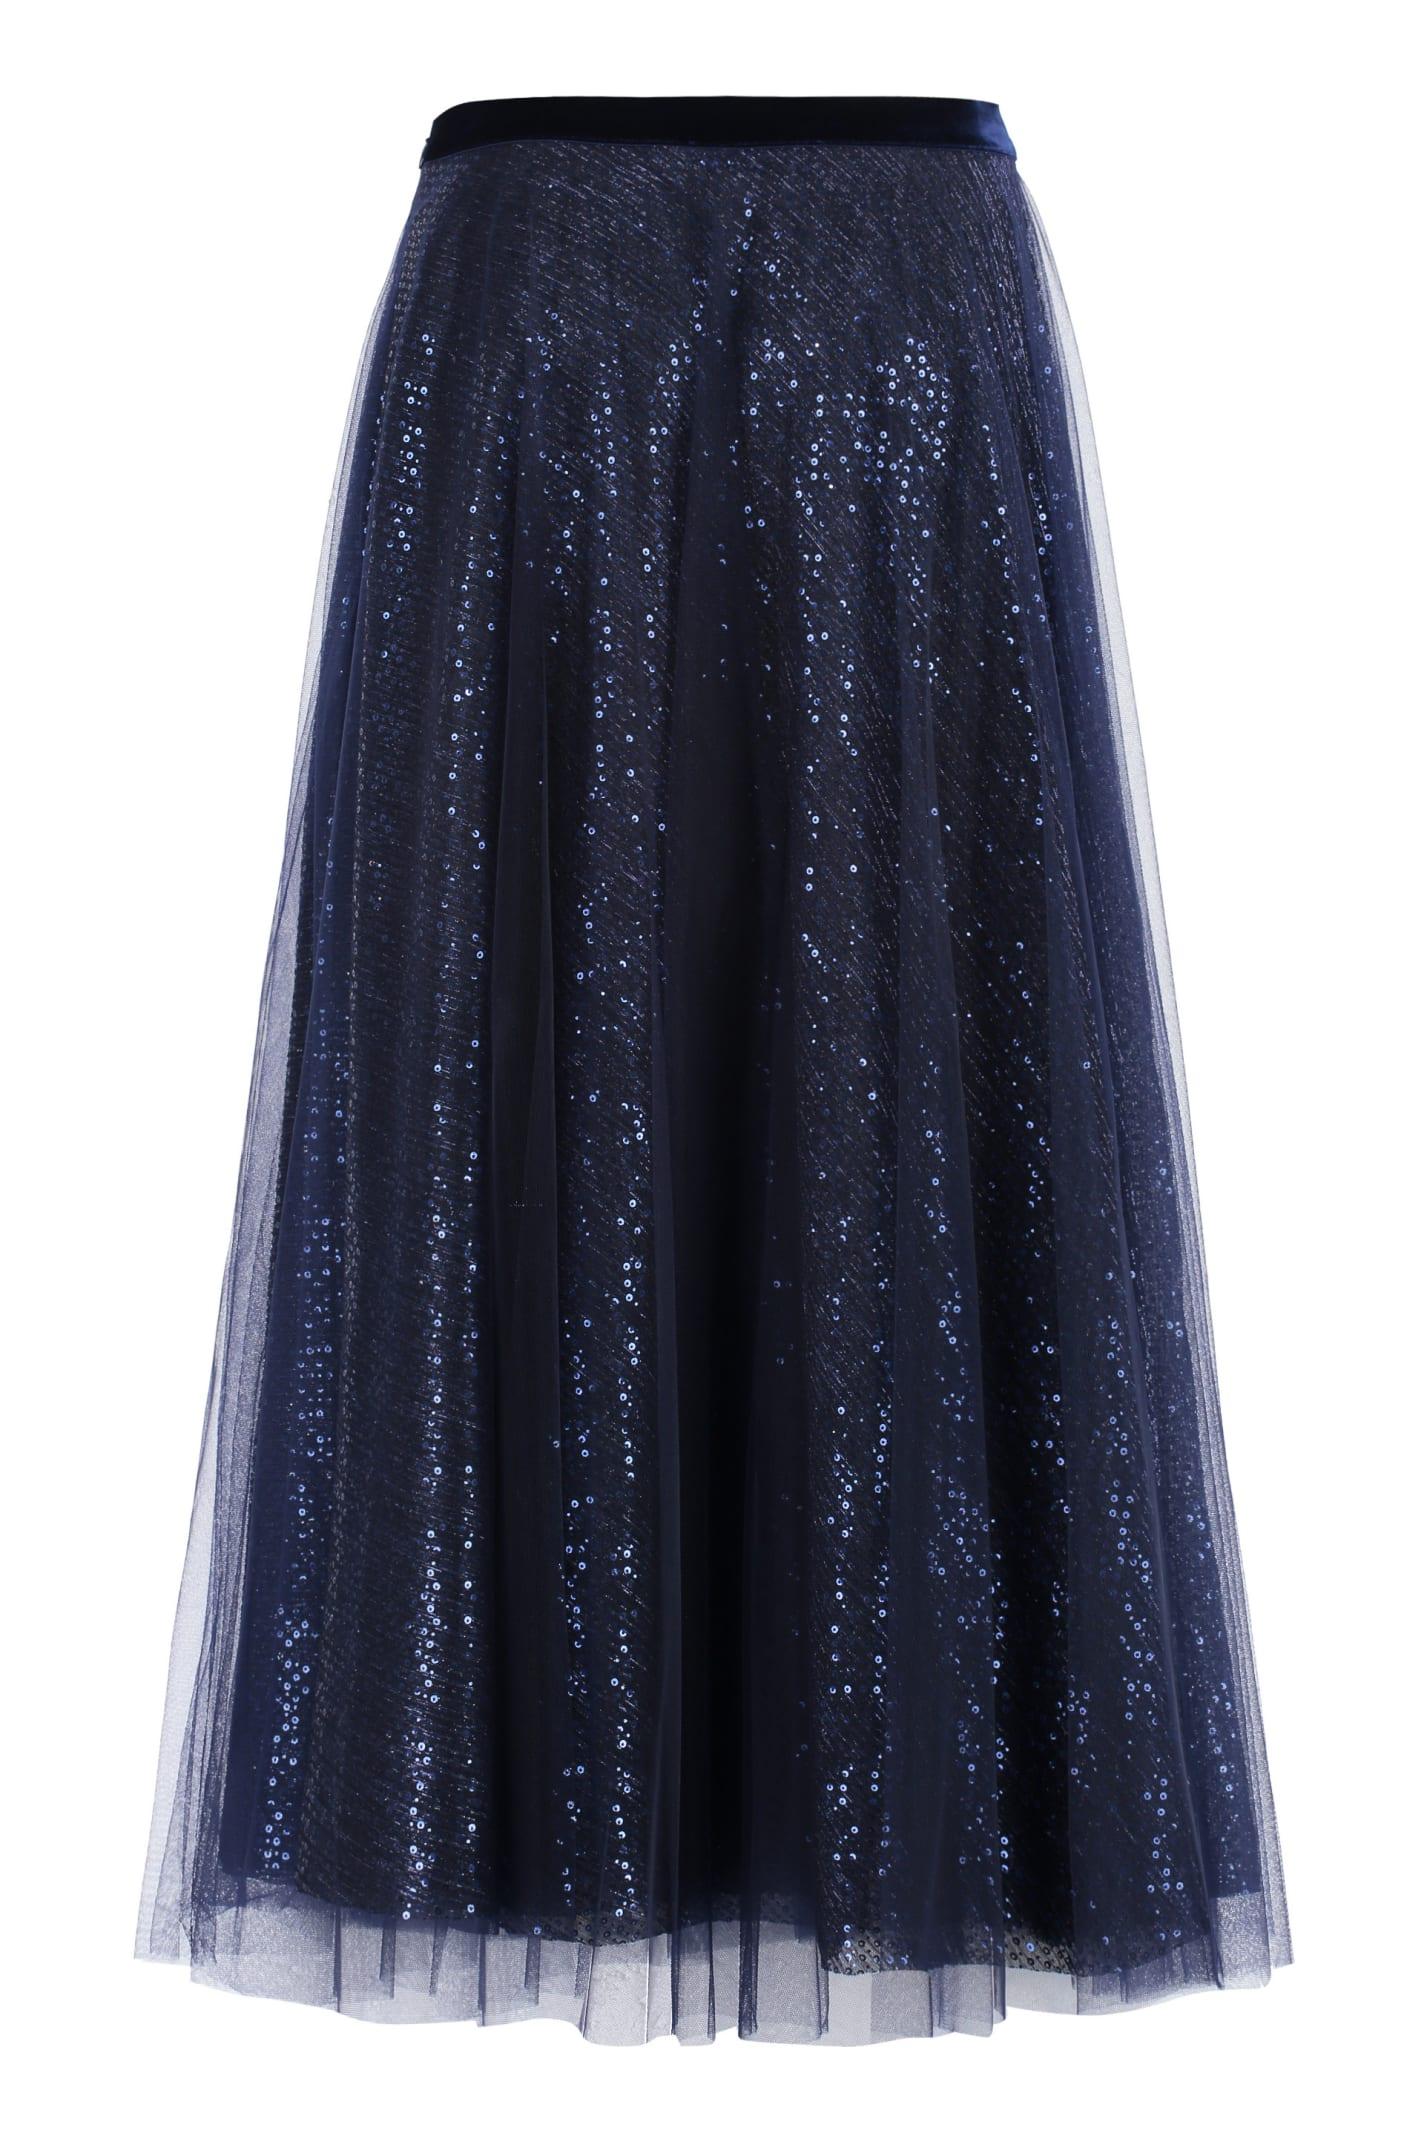 Talbot Runhof Sequined Tulle Skirt in Blue | Lyst